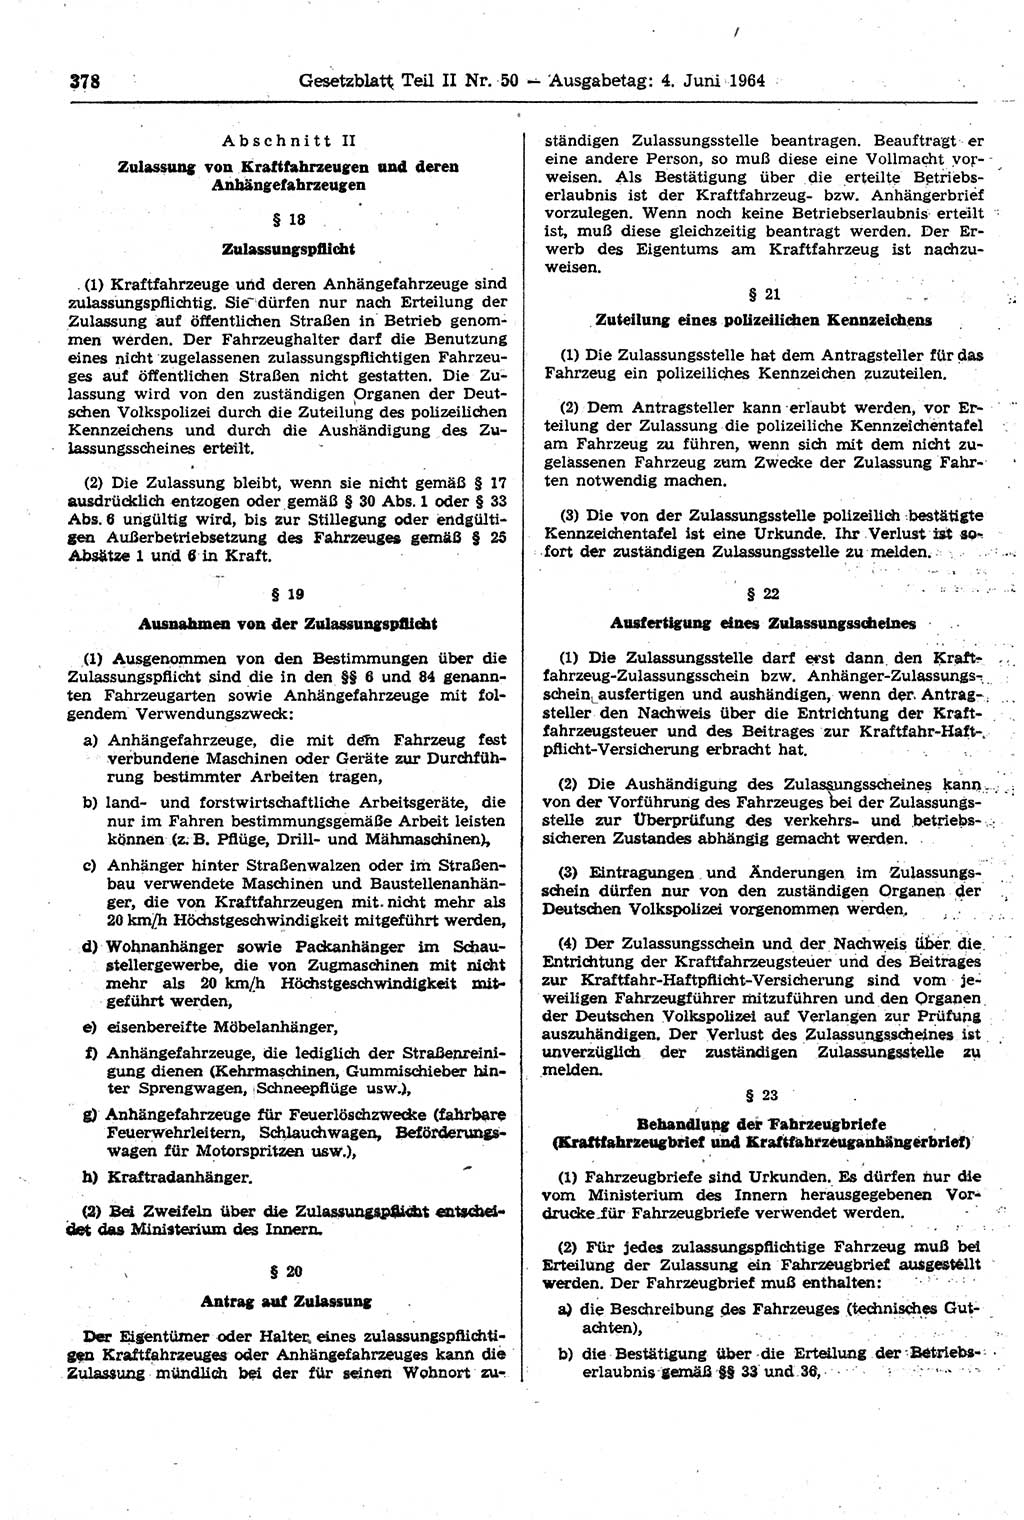 Gesetzblatt (GBl.) der Deutschen Demokratischen Republik (DDR) Teil ⅠⅠ 1964, Seite 378 (GBl. DDR ⅠⅠ 1964, S. 378)